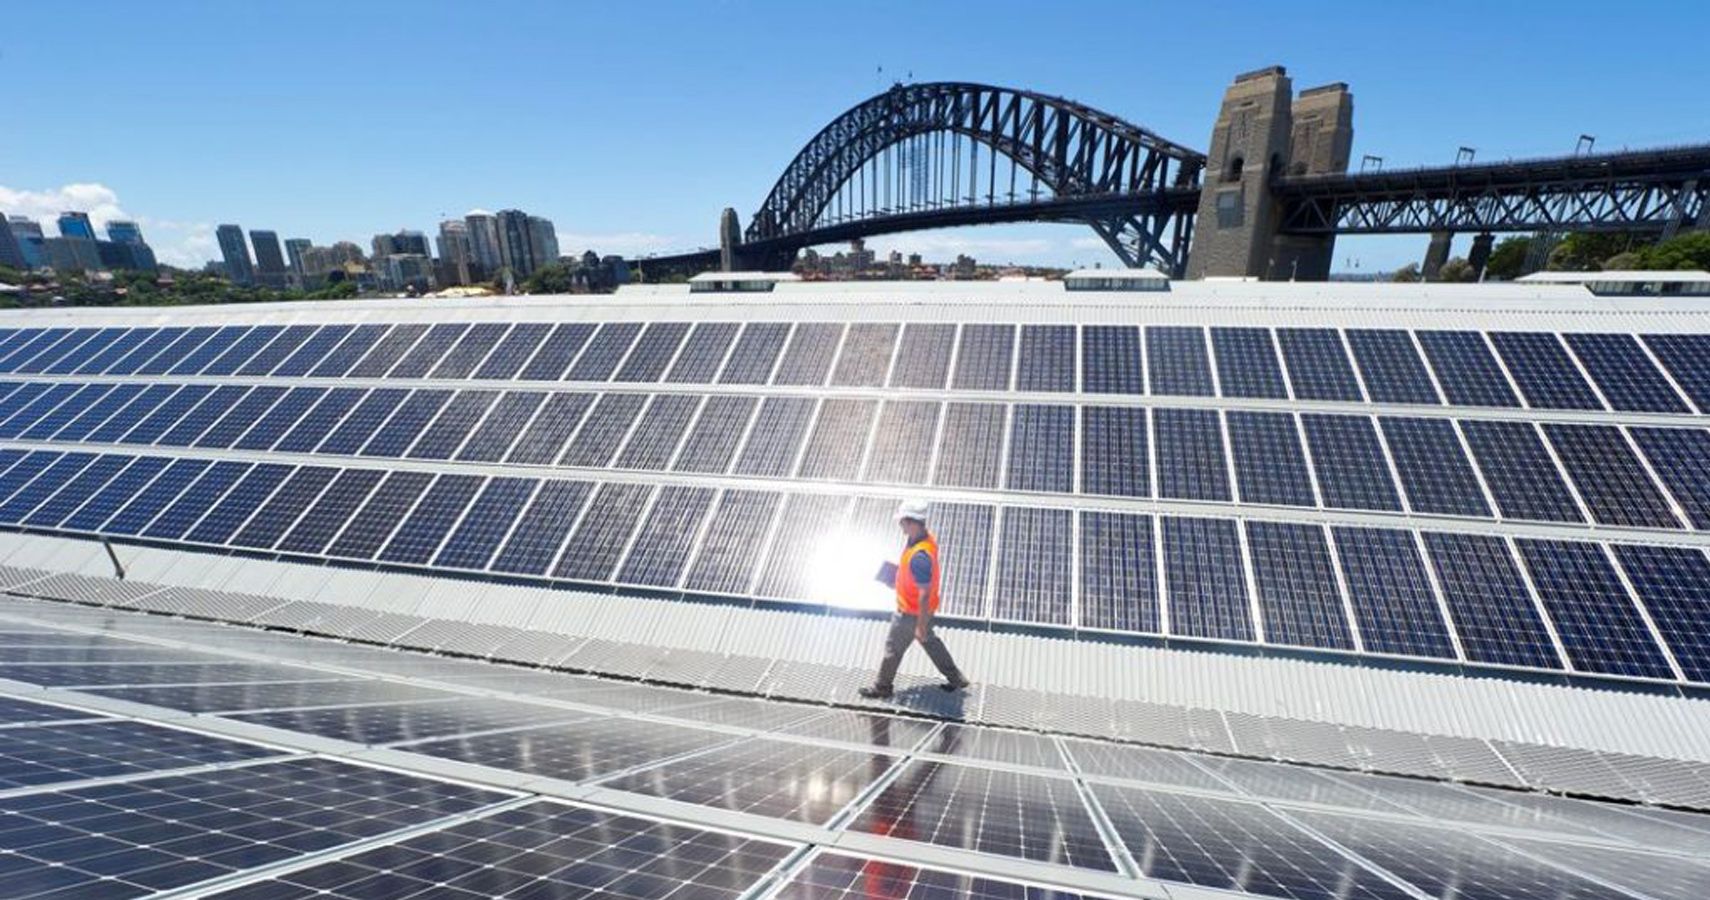 Australia espera operar totalmente com energia renovavel em 15 anos